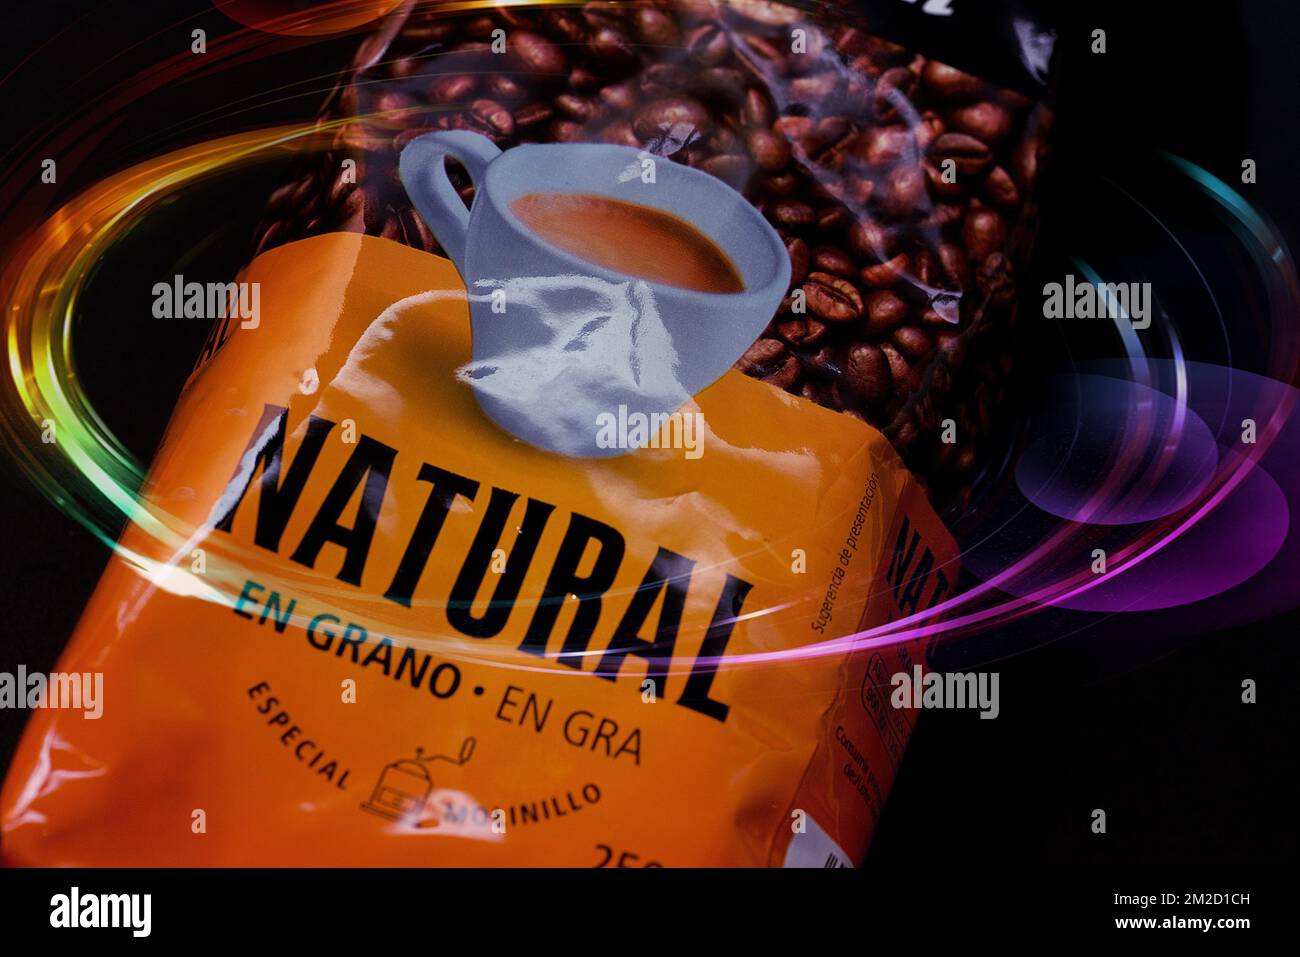 Cafe Natural en grano - Consum